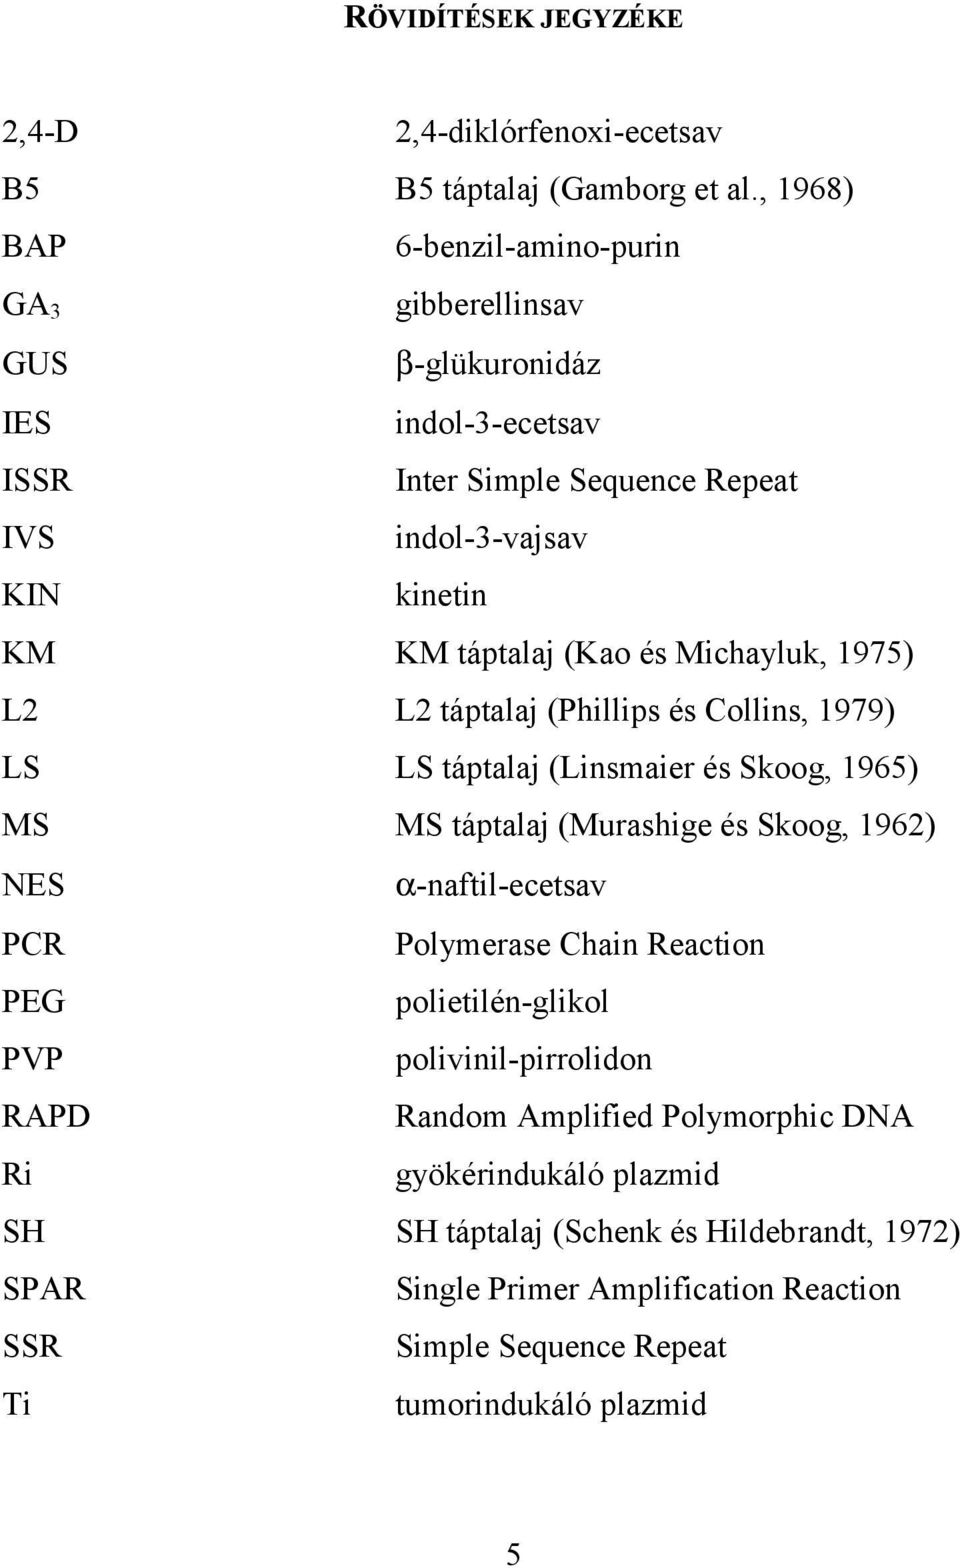 és Michayluk, 1975) L2 L2 táptalaj (Phillips és Collins, 1979) LS LS táptalaj (Linsmaier és Skoog, 1965) MS MS táptalaj (Murashige és Skoog, 1962) NES α-naftil-ecetsav PCR